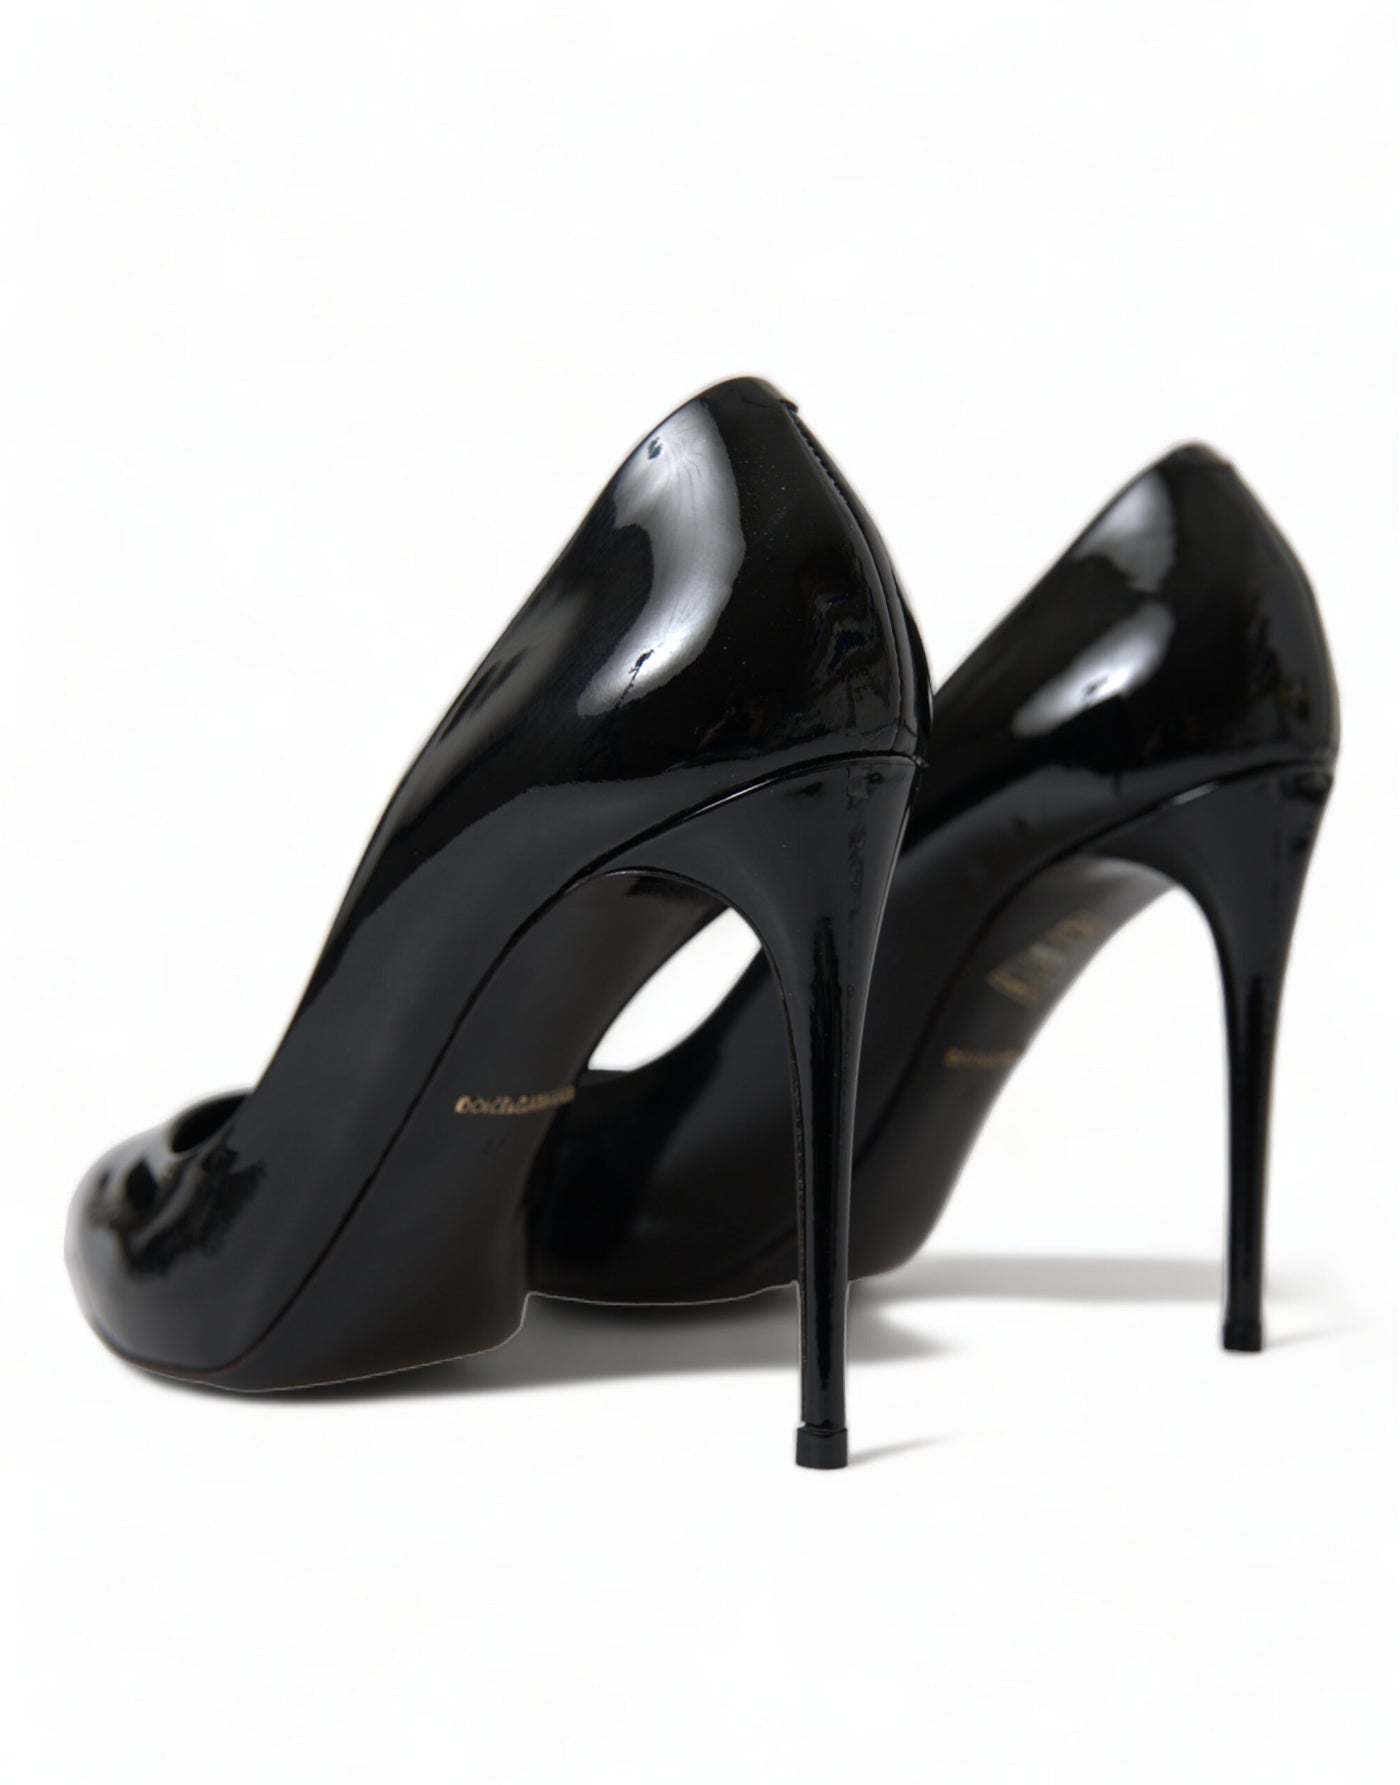 Black Patent Leather Pumps Heels Shoes